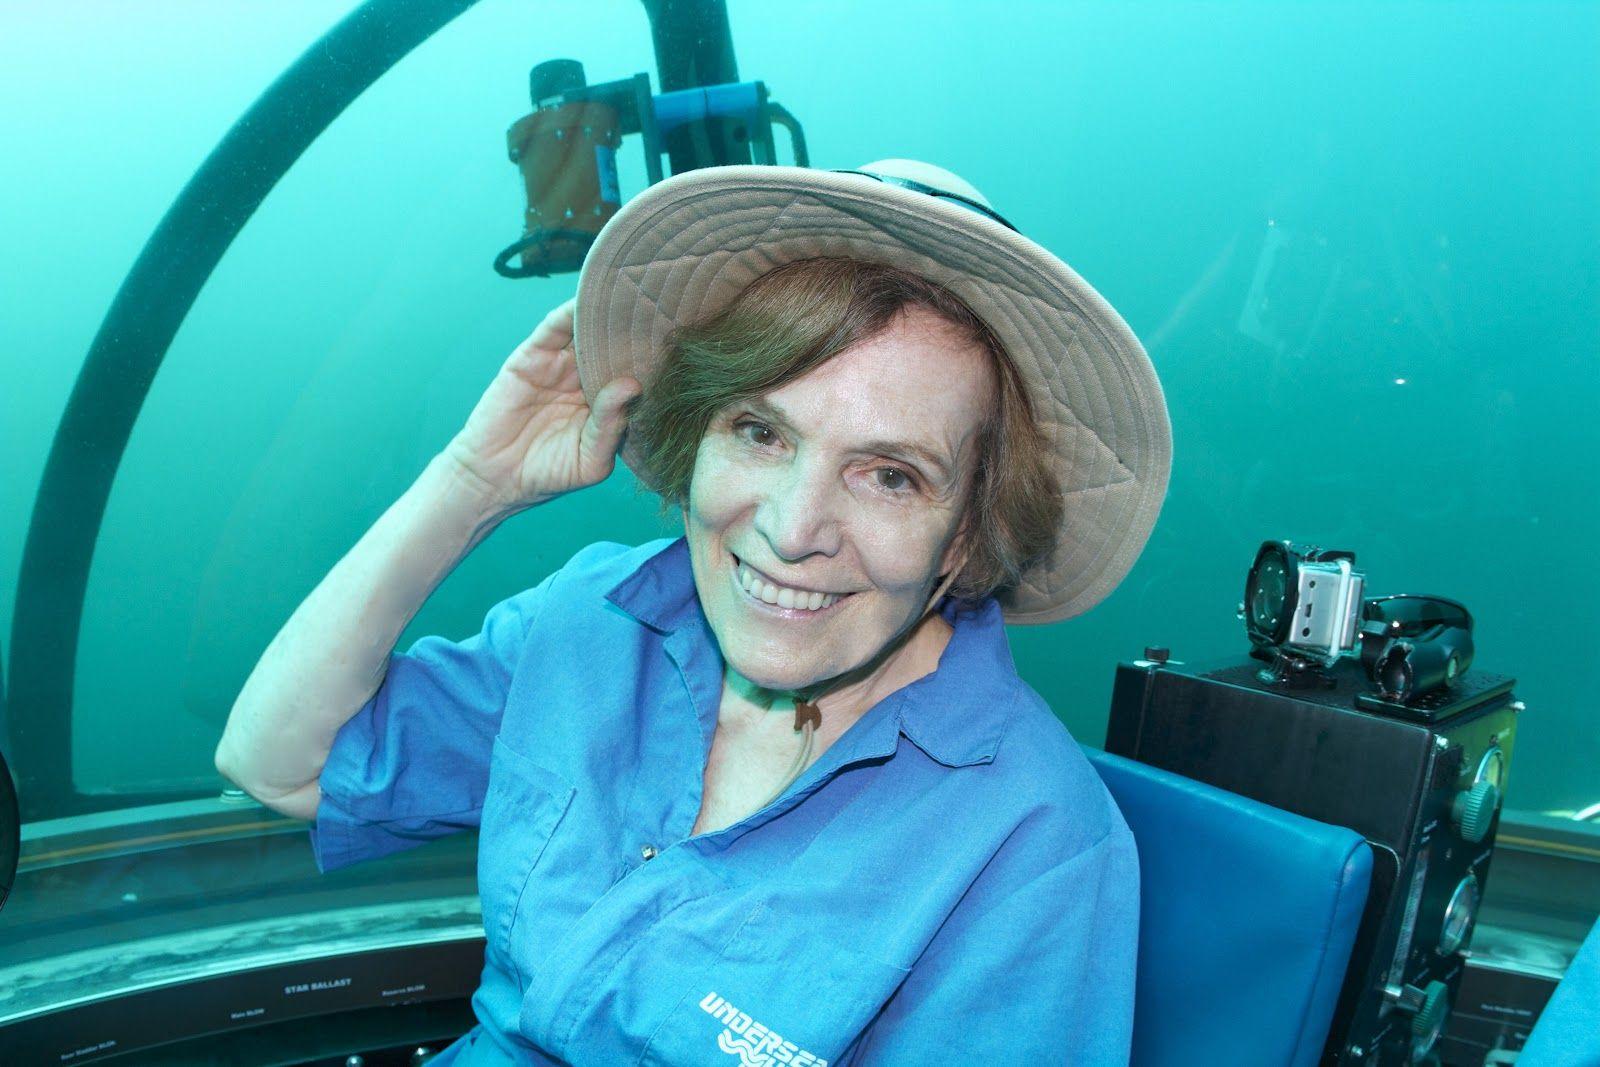 La bióloga estadounidense Sylvia Alice Earle, de 84 años, sigue en activo creando áreas marinas protegidas alrededor del mundo a través de su Fundación Mission Blue